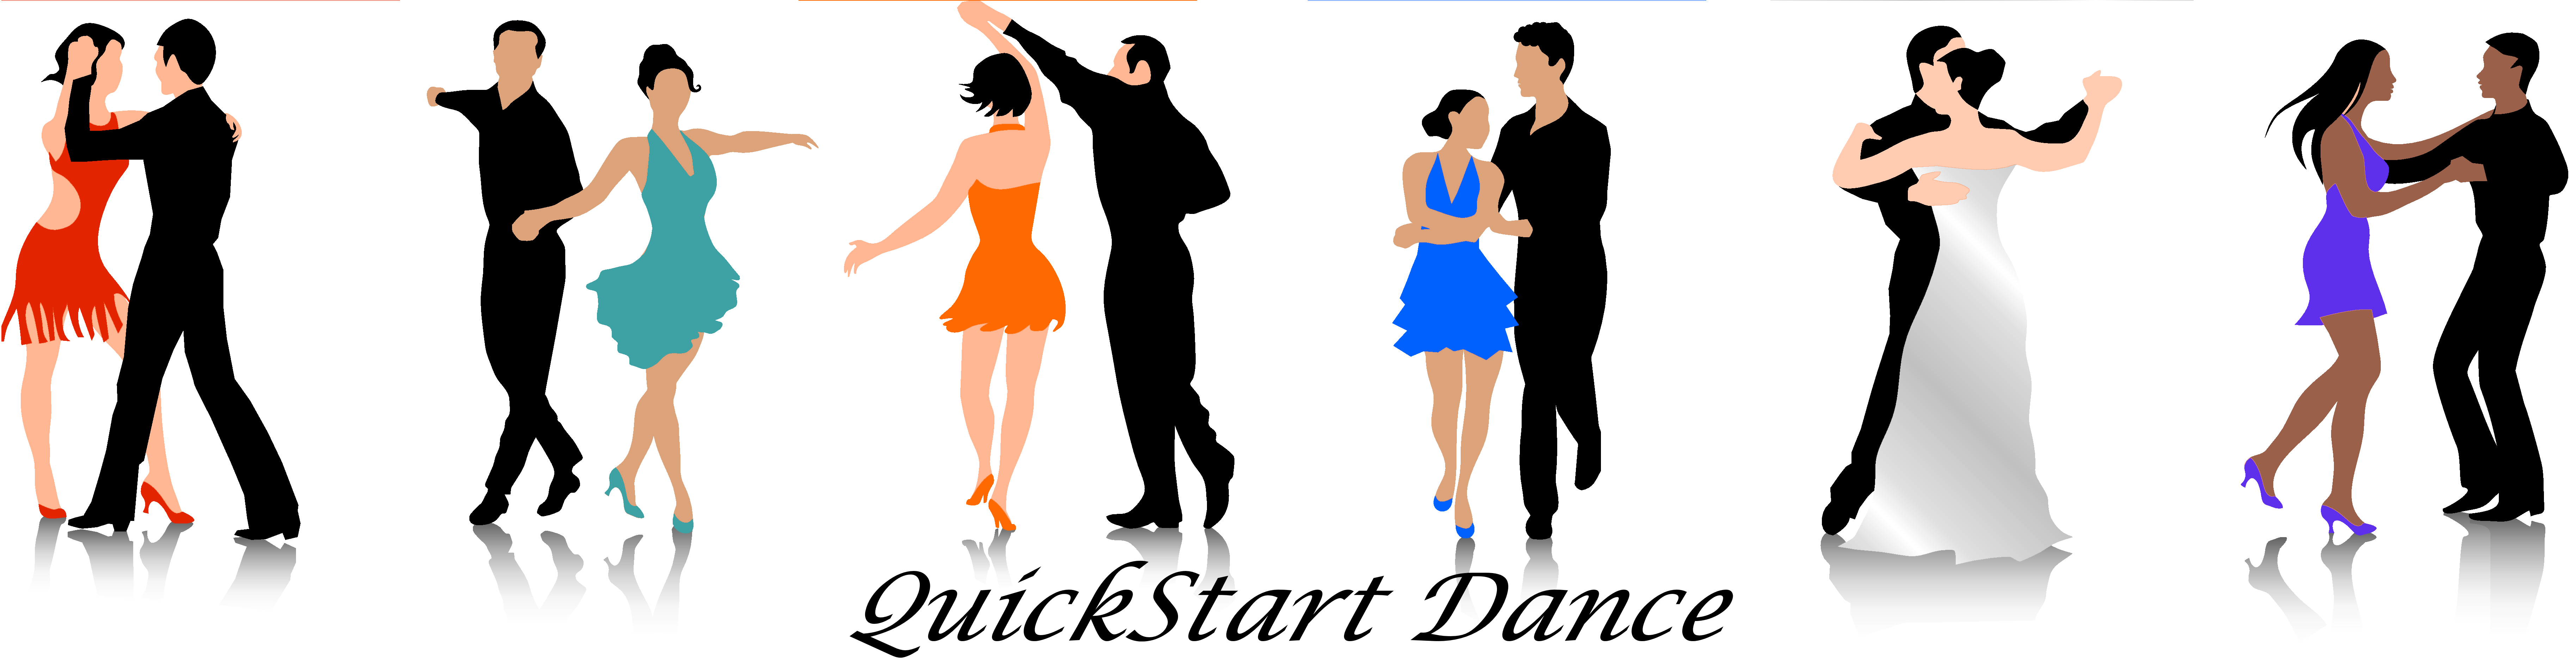 Quickstart Dance